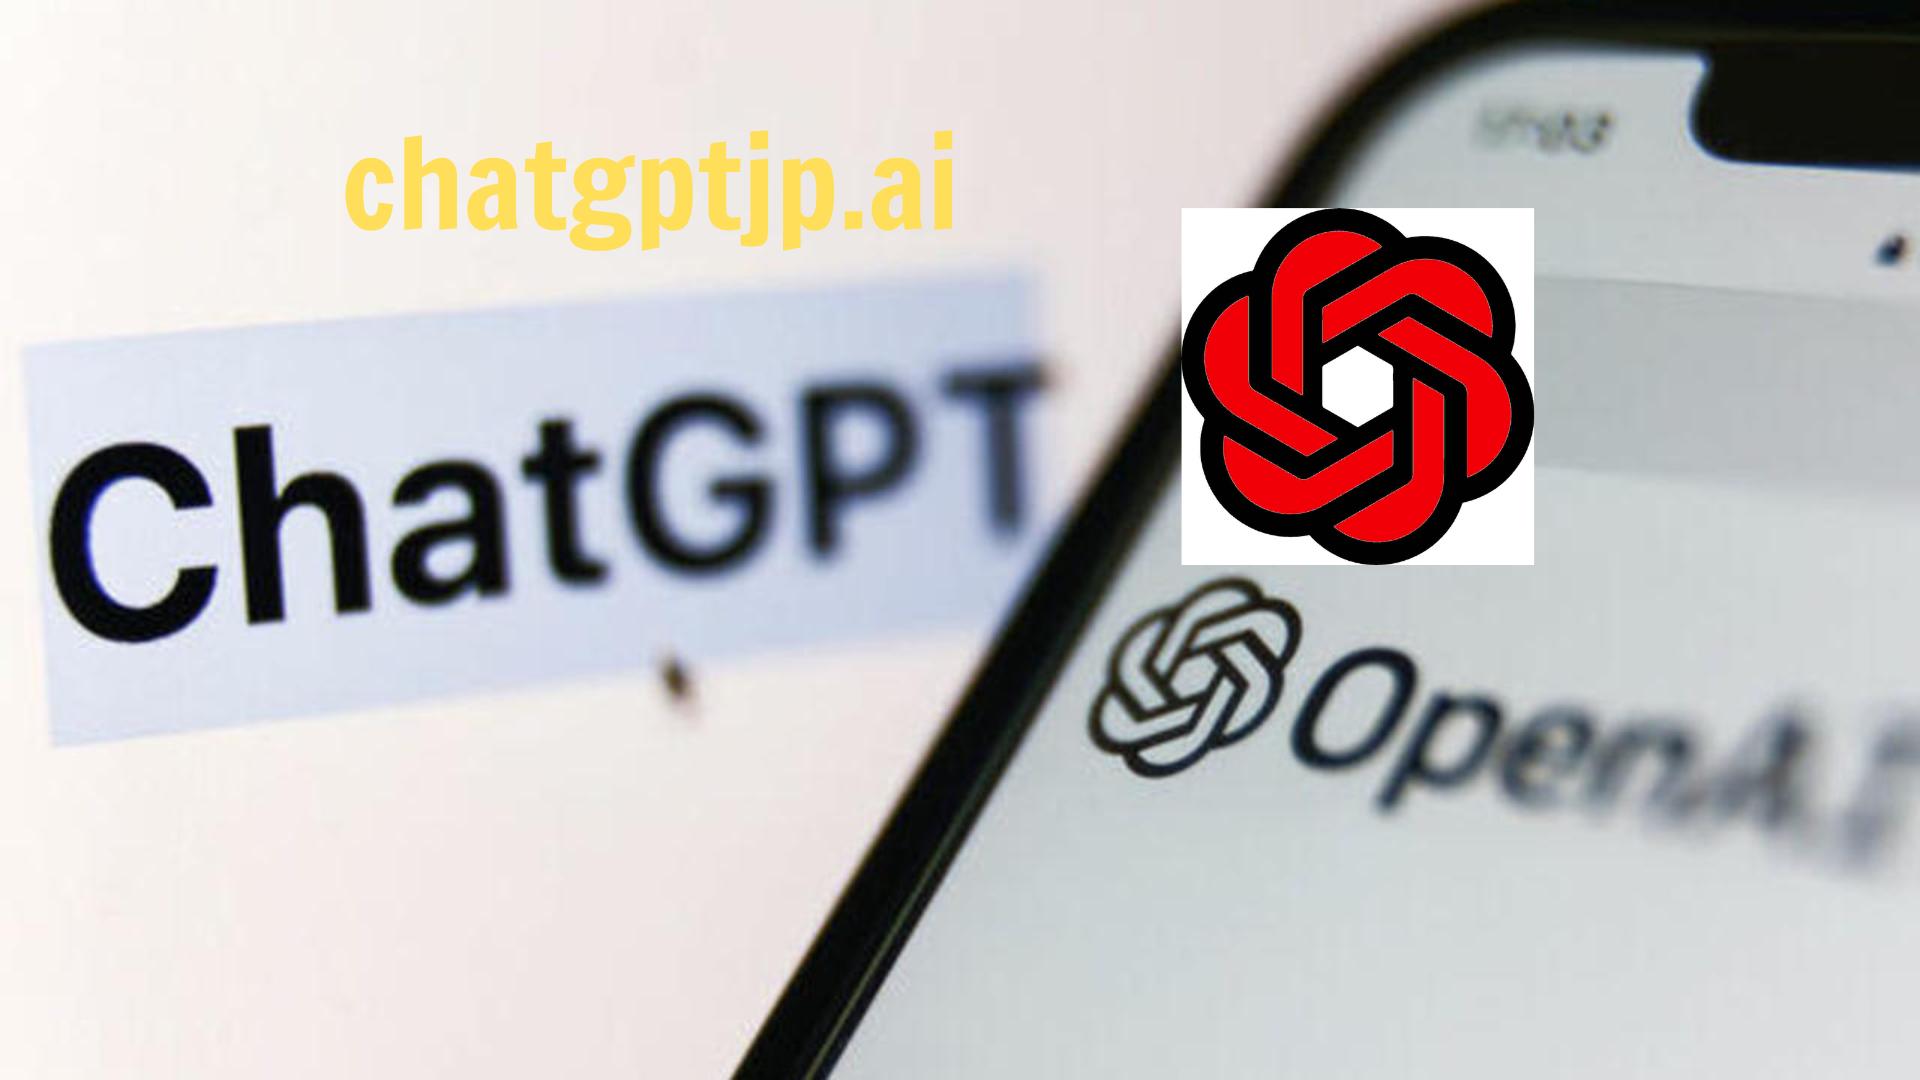 ChatGPTを使用して、より迅速かつ適切にテキストを作成します。